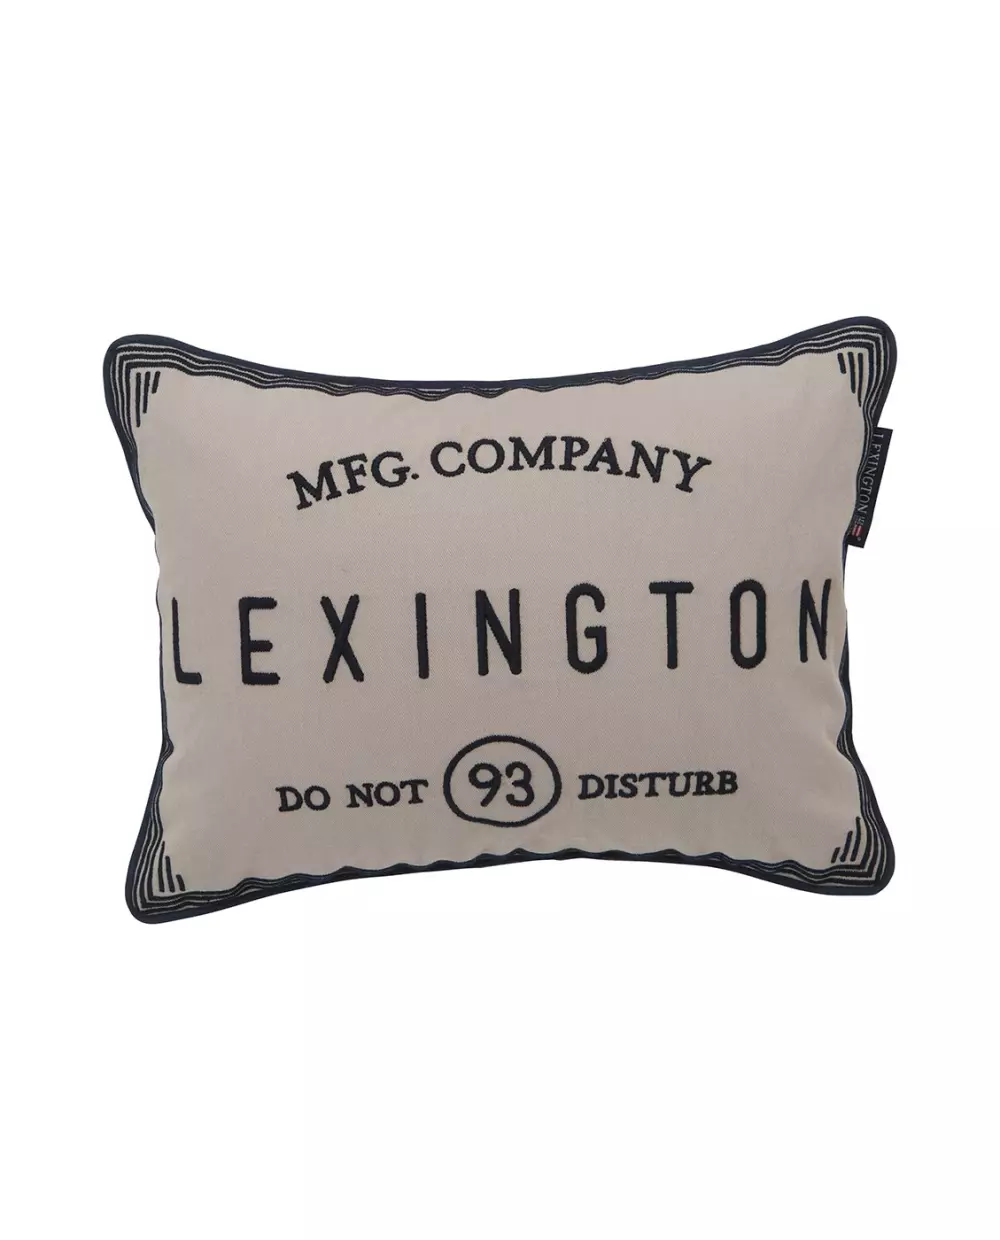 Lexington Pute Do Not Disturb, 7321301434640, 100813032000-SH10, Tekstil, Puter og Putetrekk, Lexington, Hotel Do Not Disturb Sham